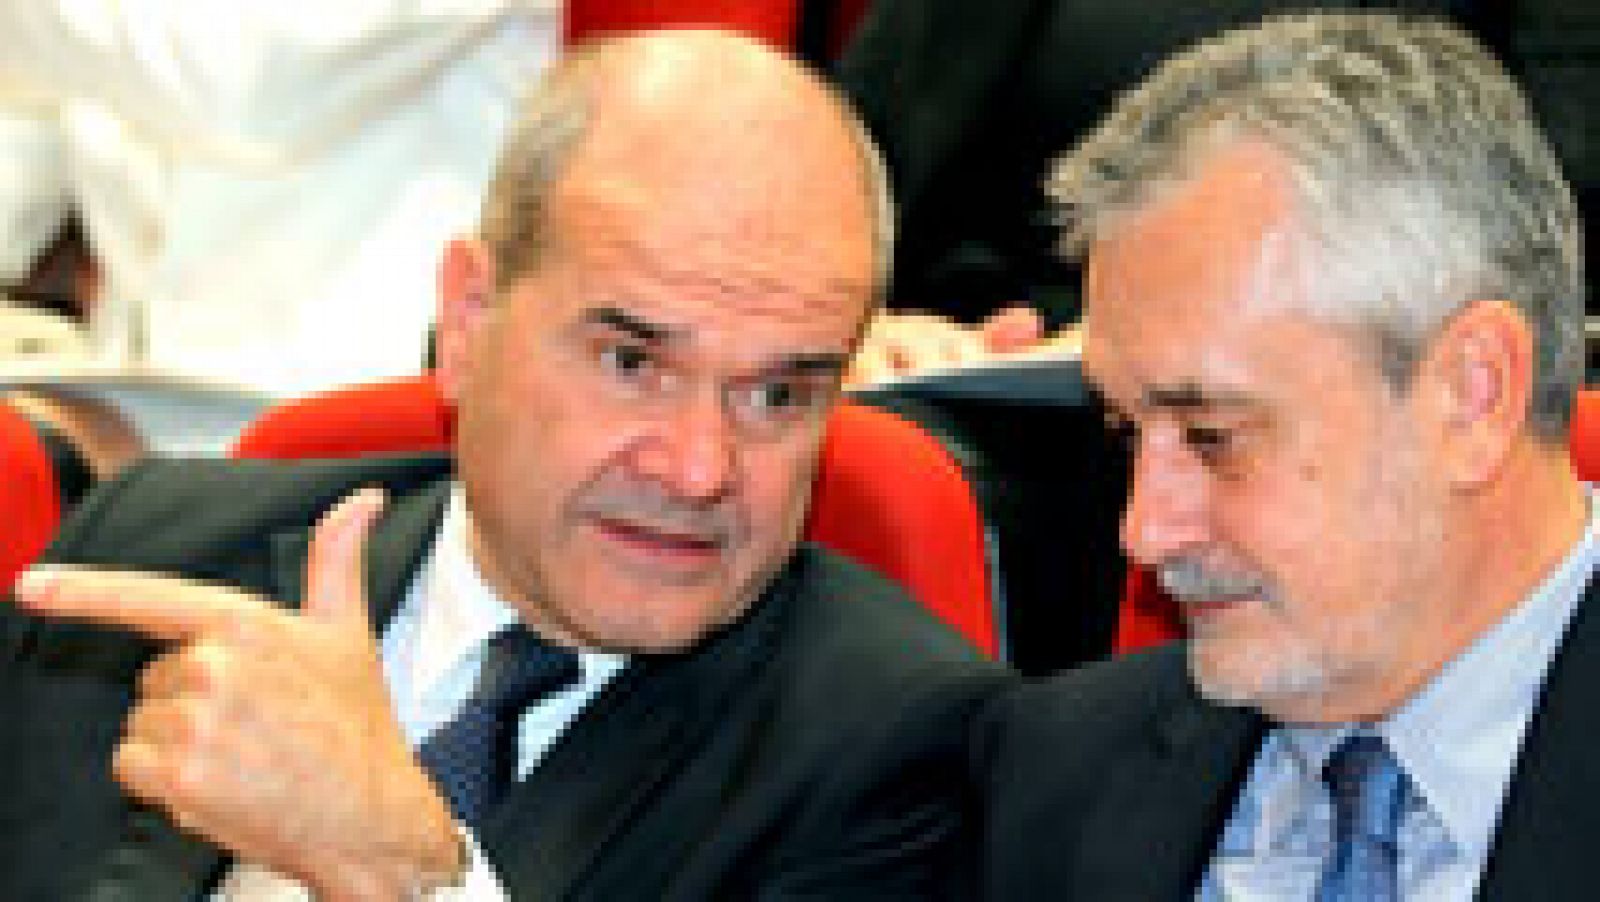 El juez abre juicio oral contra los expresidentes andaluces por prevaricación en el caso de los ERE